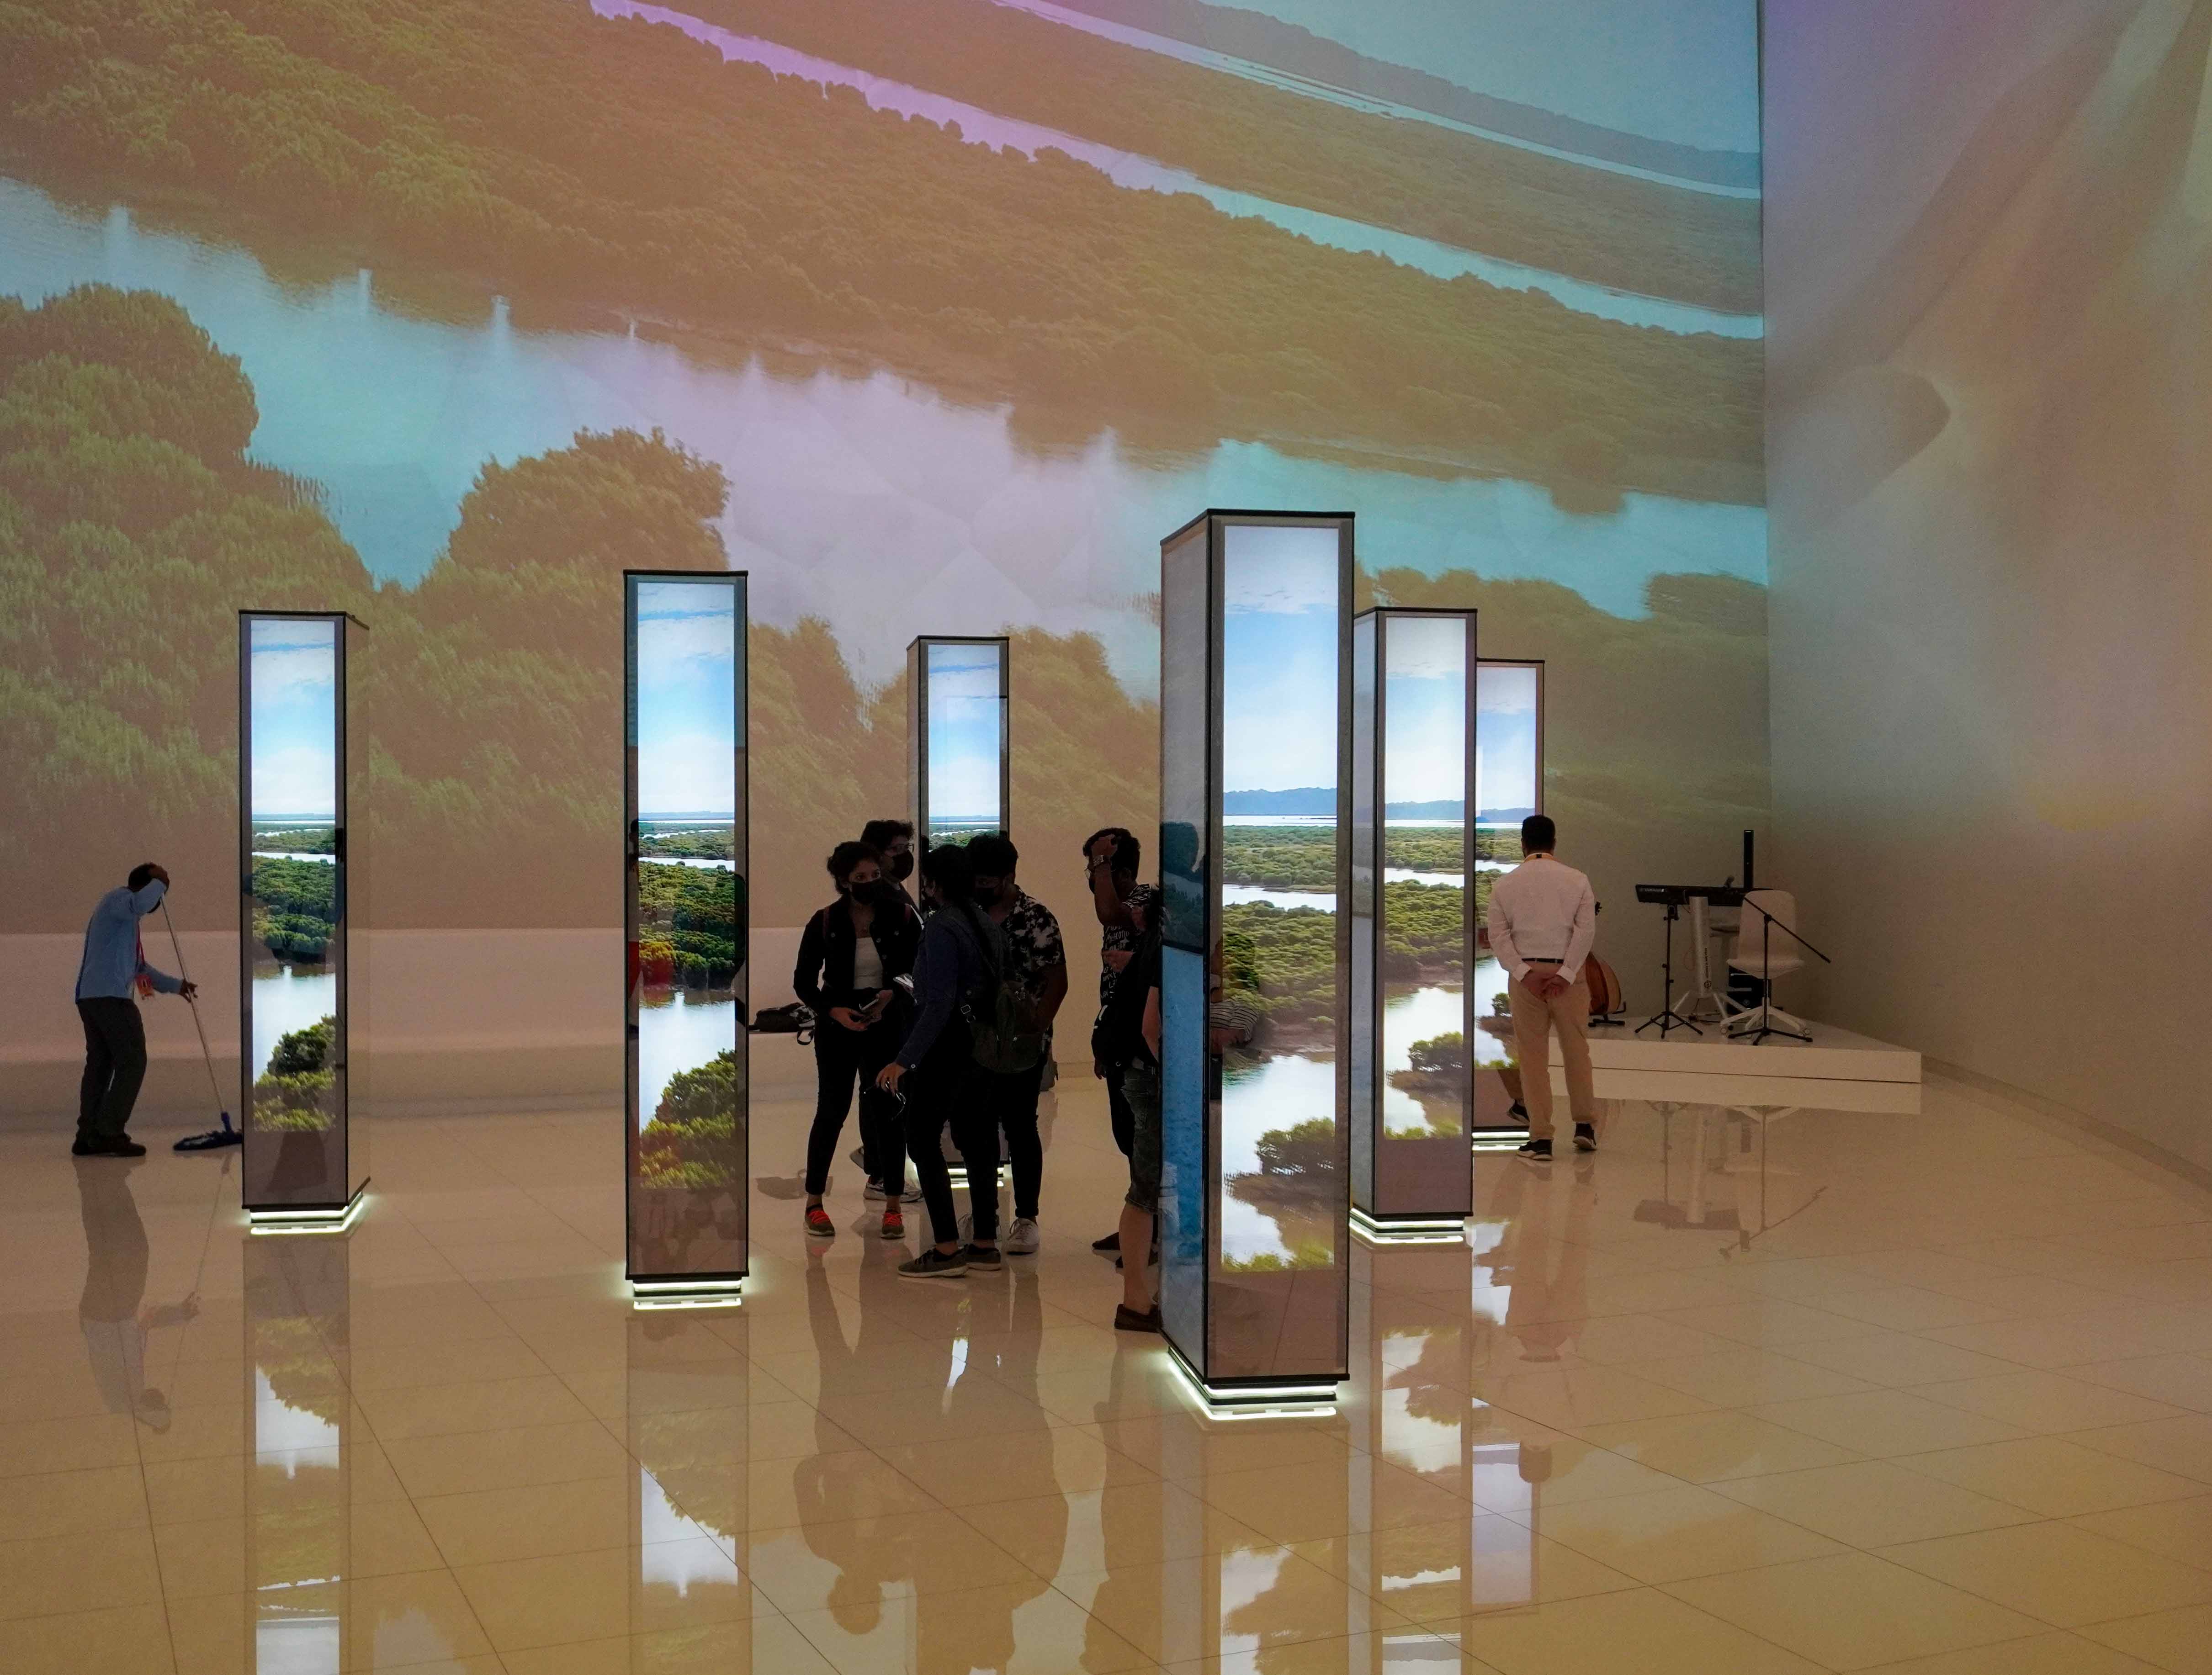 قاعة داخلية بتصميم تكنولوجي مبتكر يؤكد رؤية قطر المستقبلية نحو التنمية المستدامة مع الحفاظ على البيئة